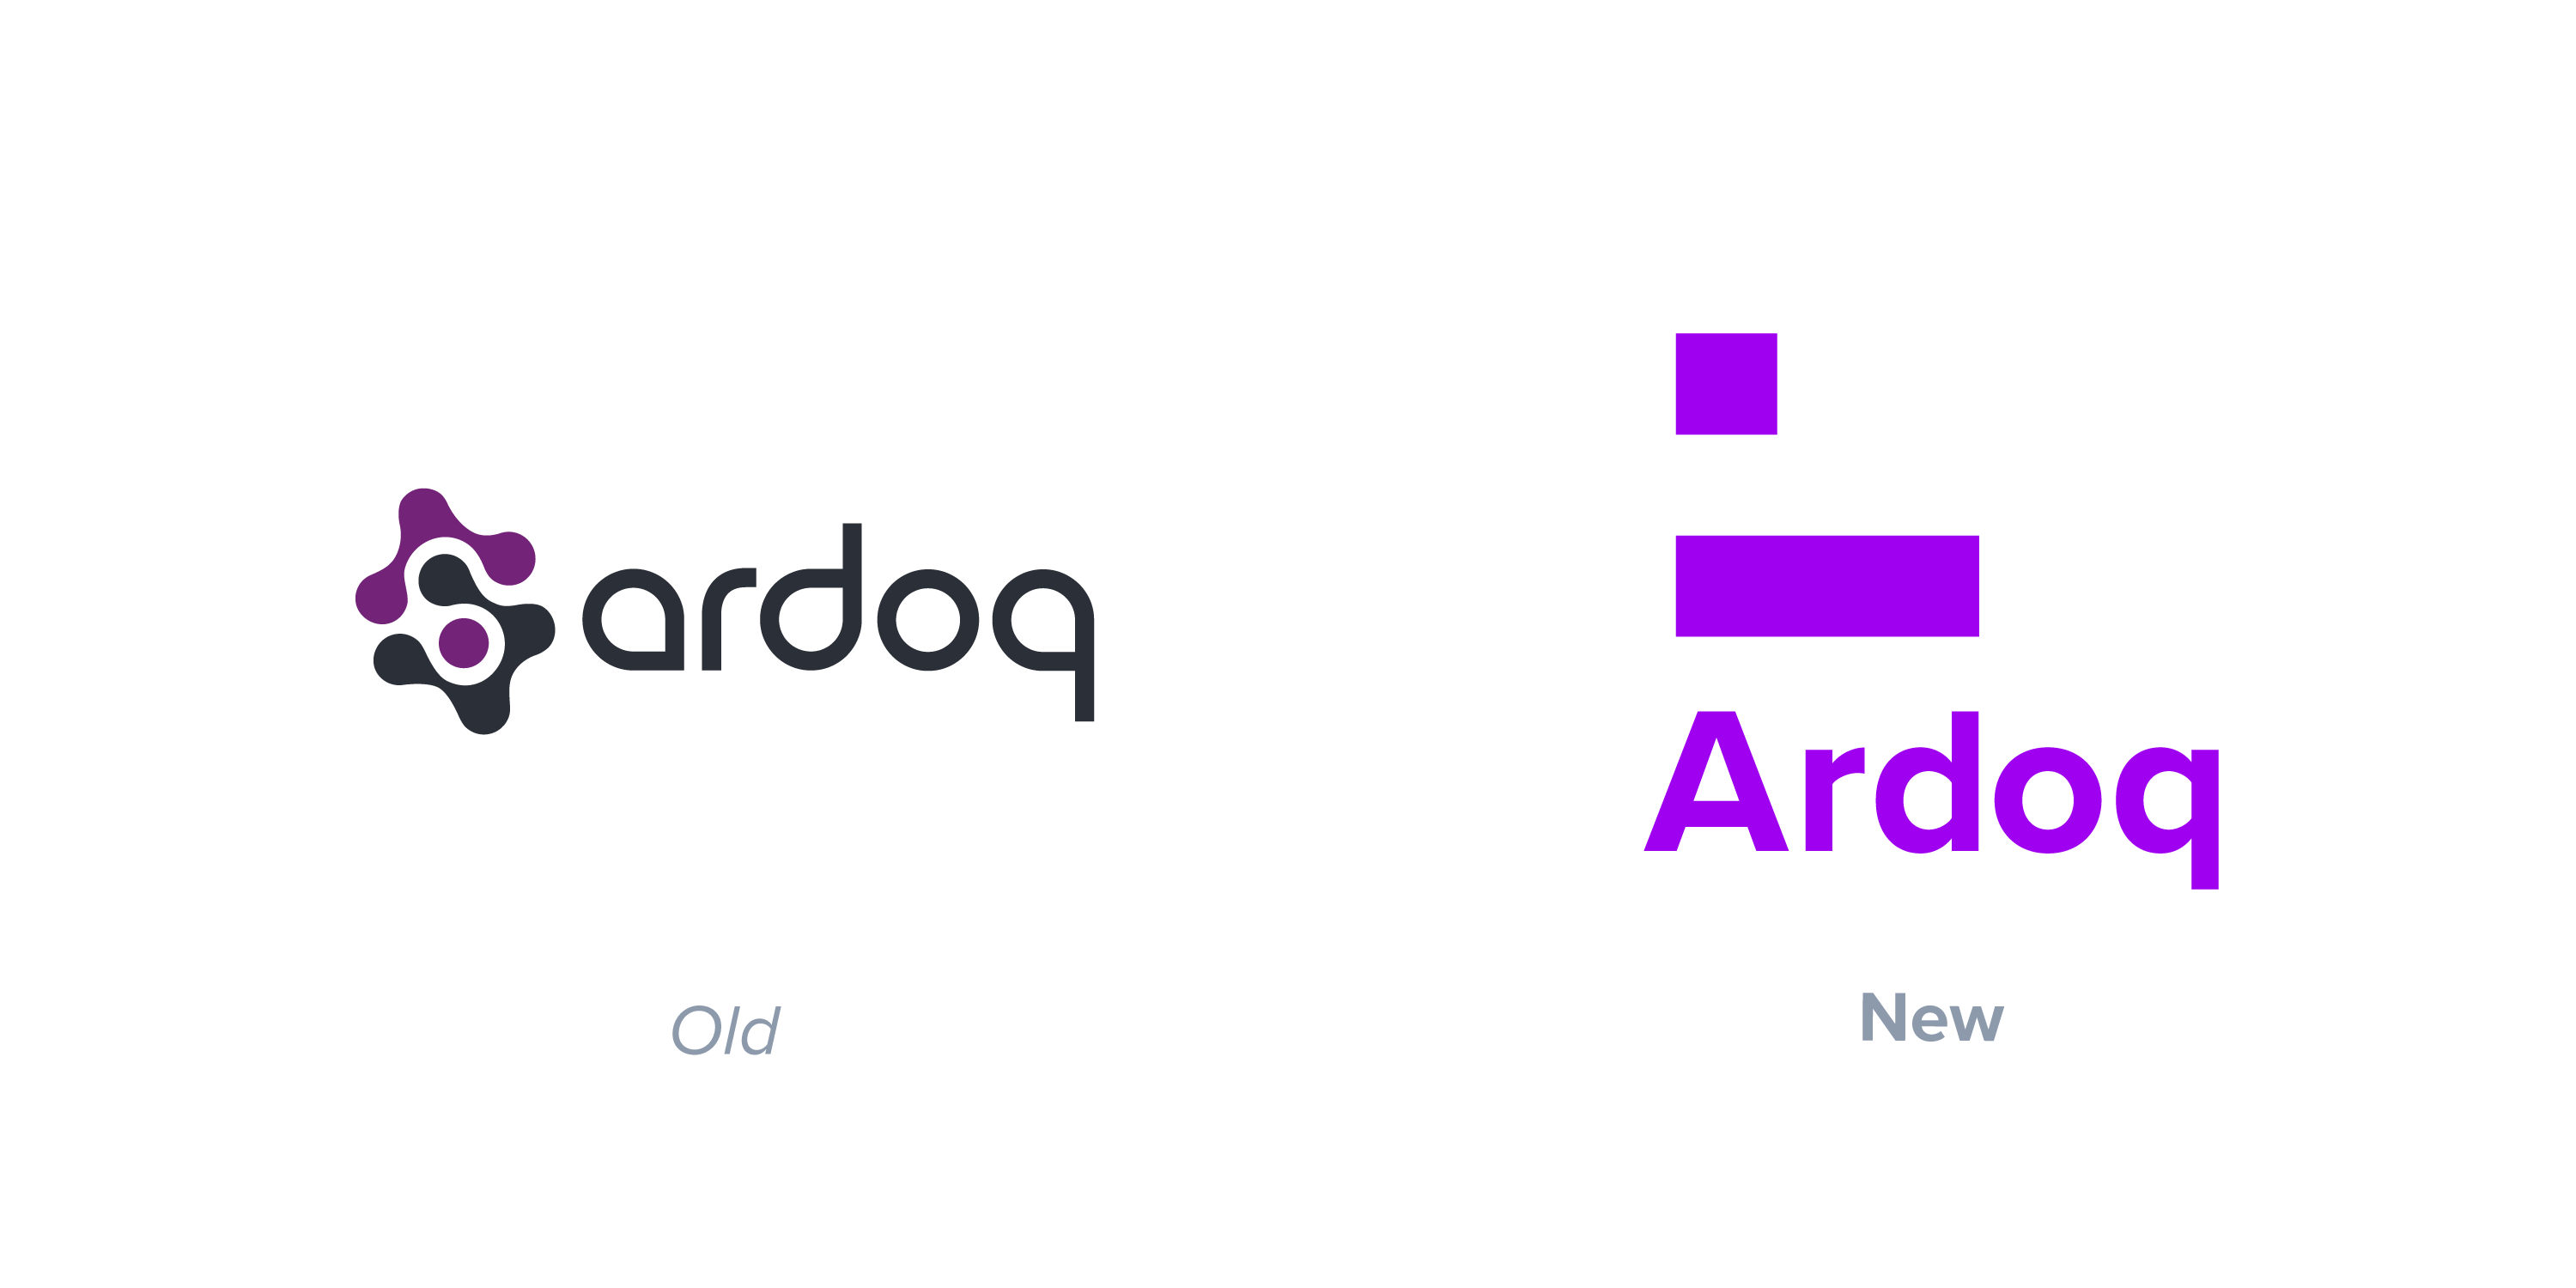 ardoq logo old vs new